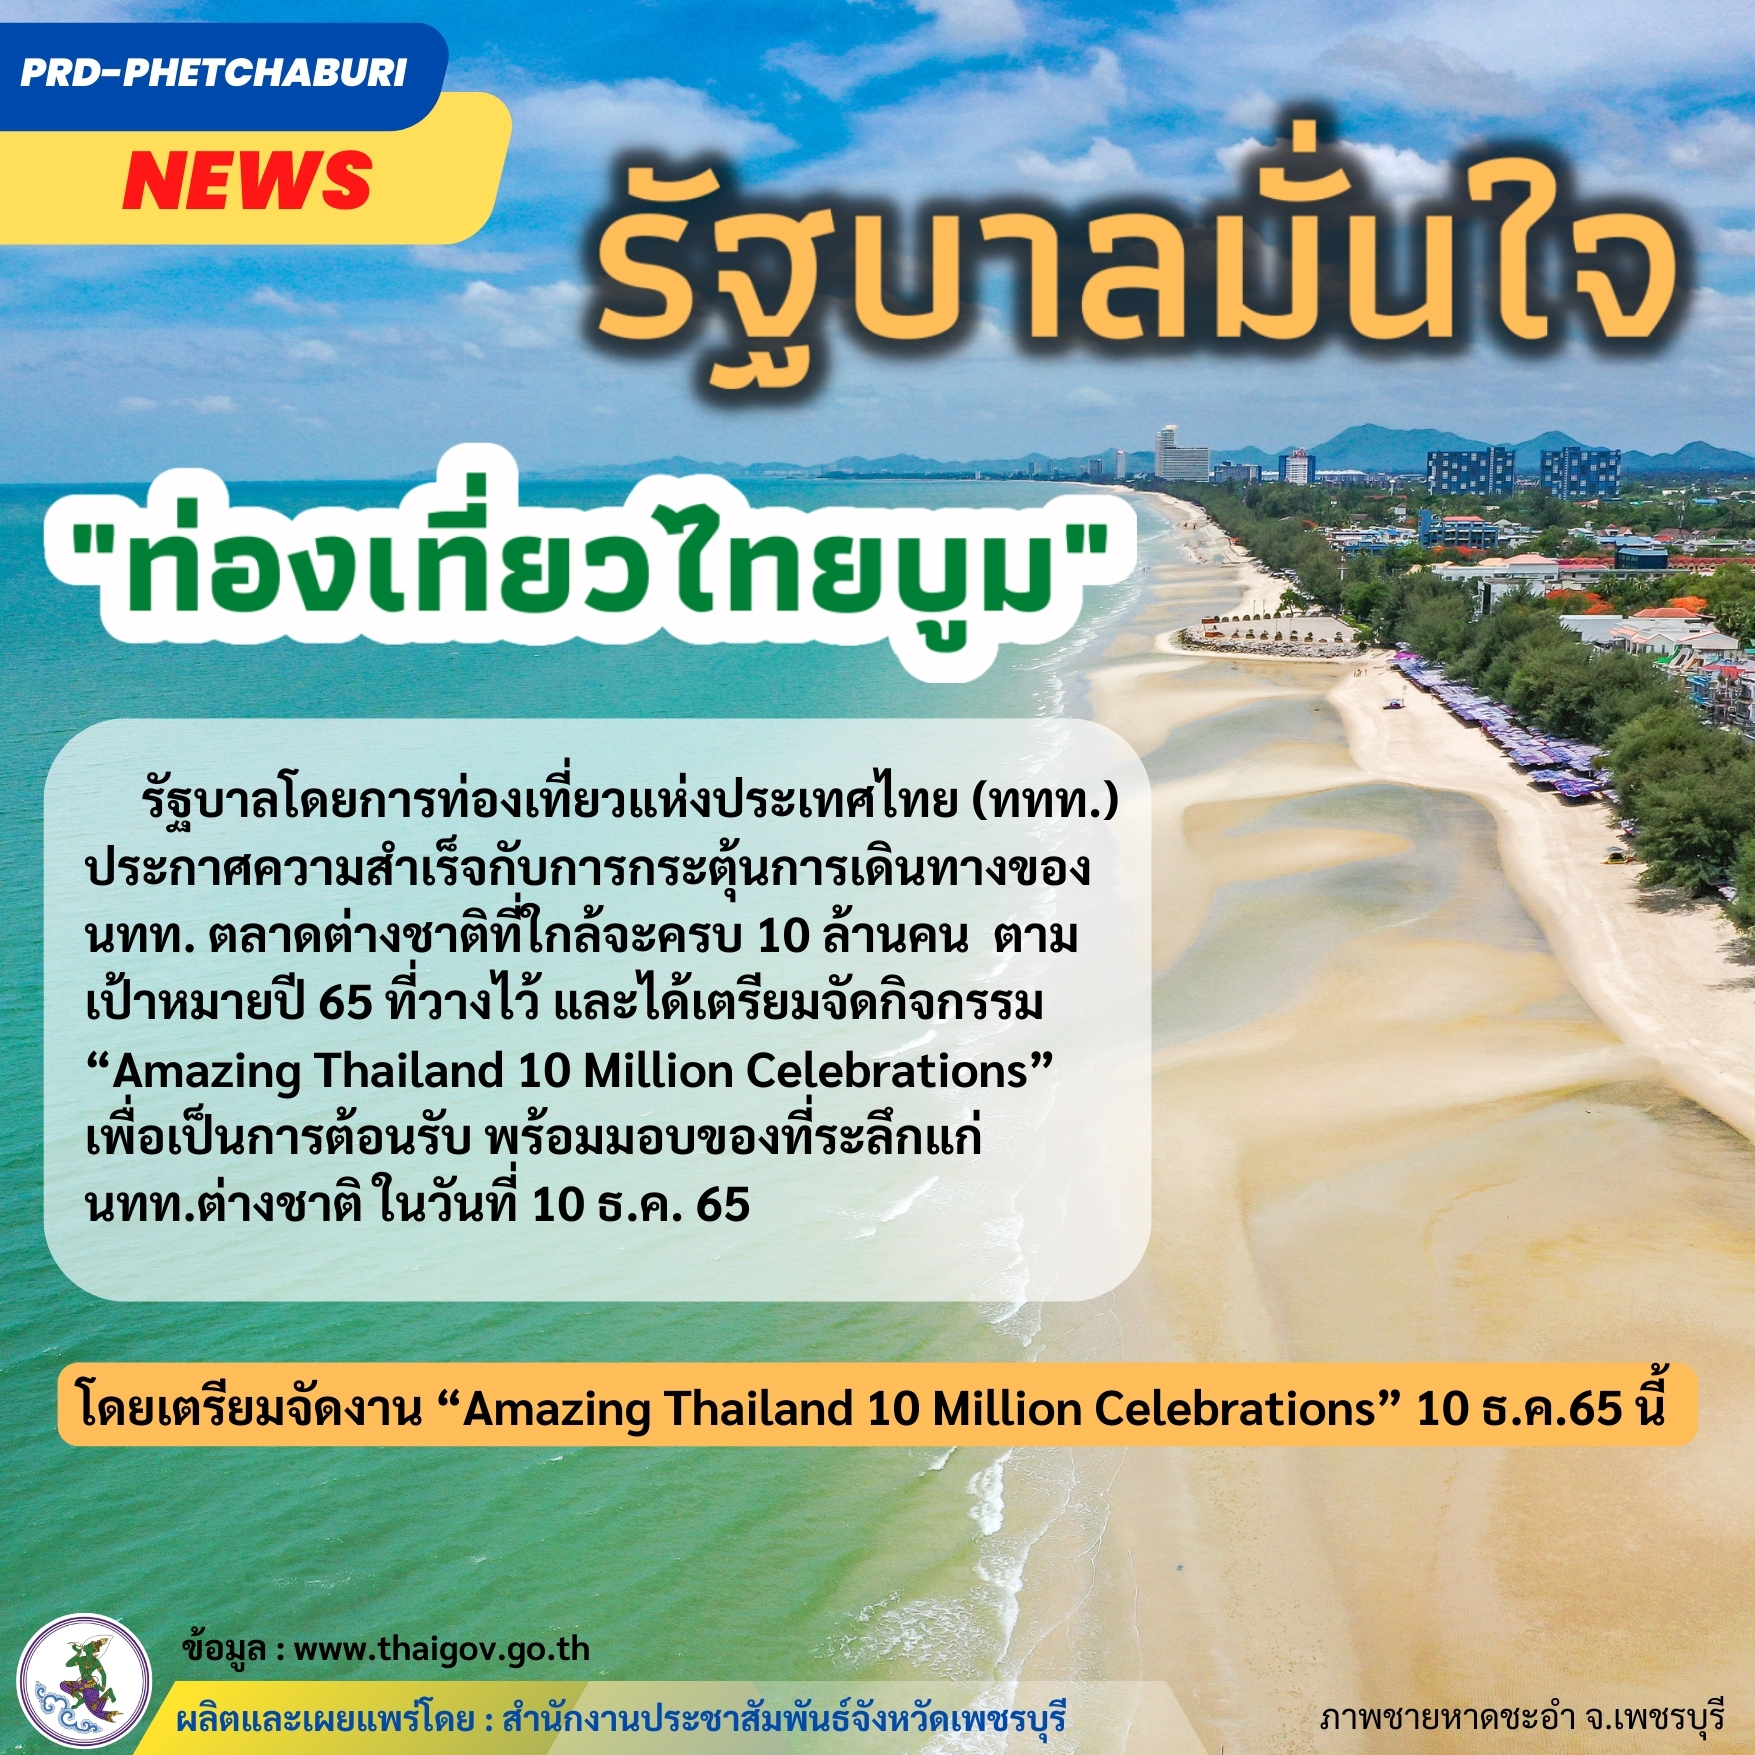 รัฐบาลมั่นใจ ท่องเที่ยวไทยบูม